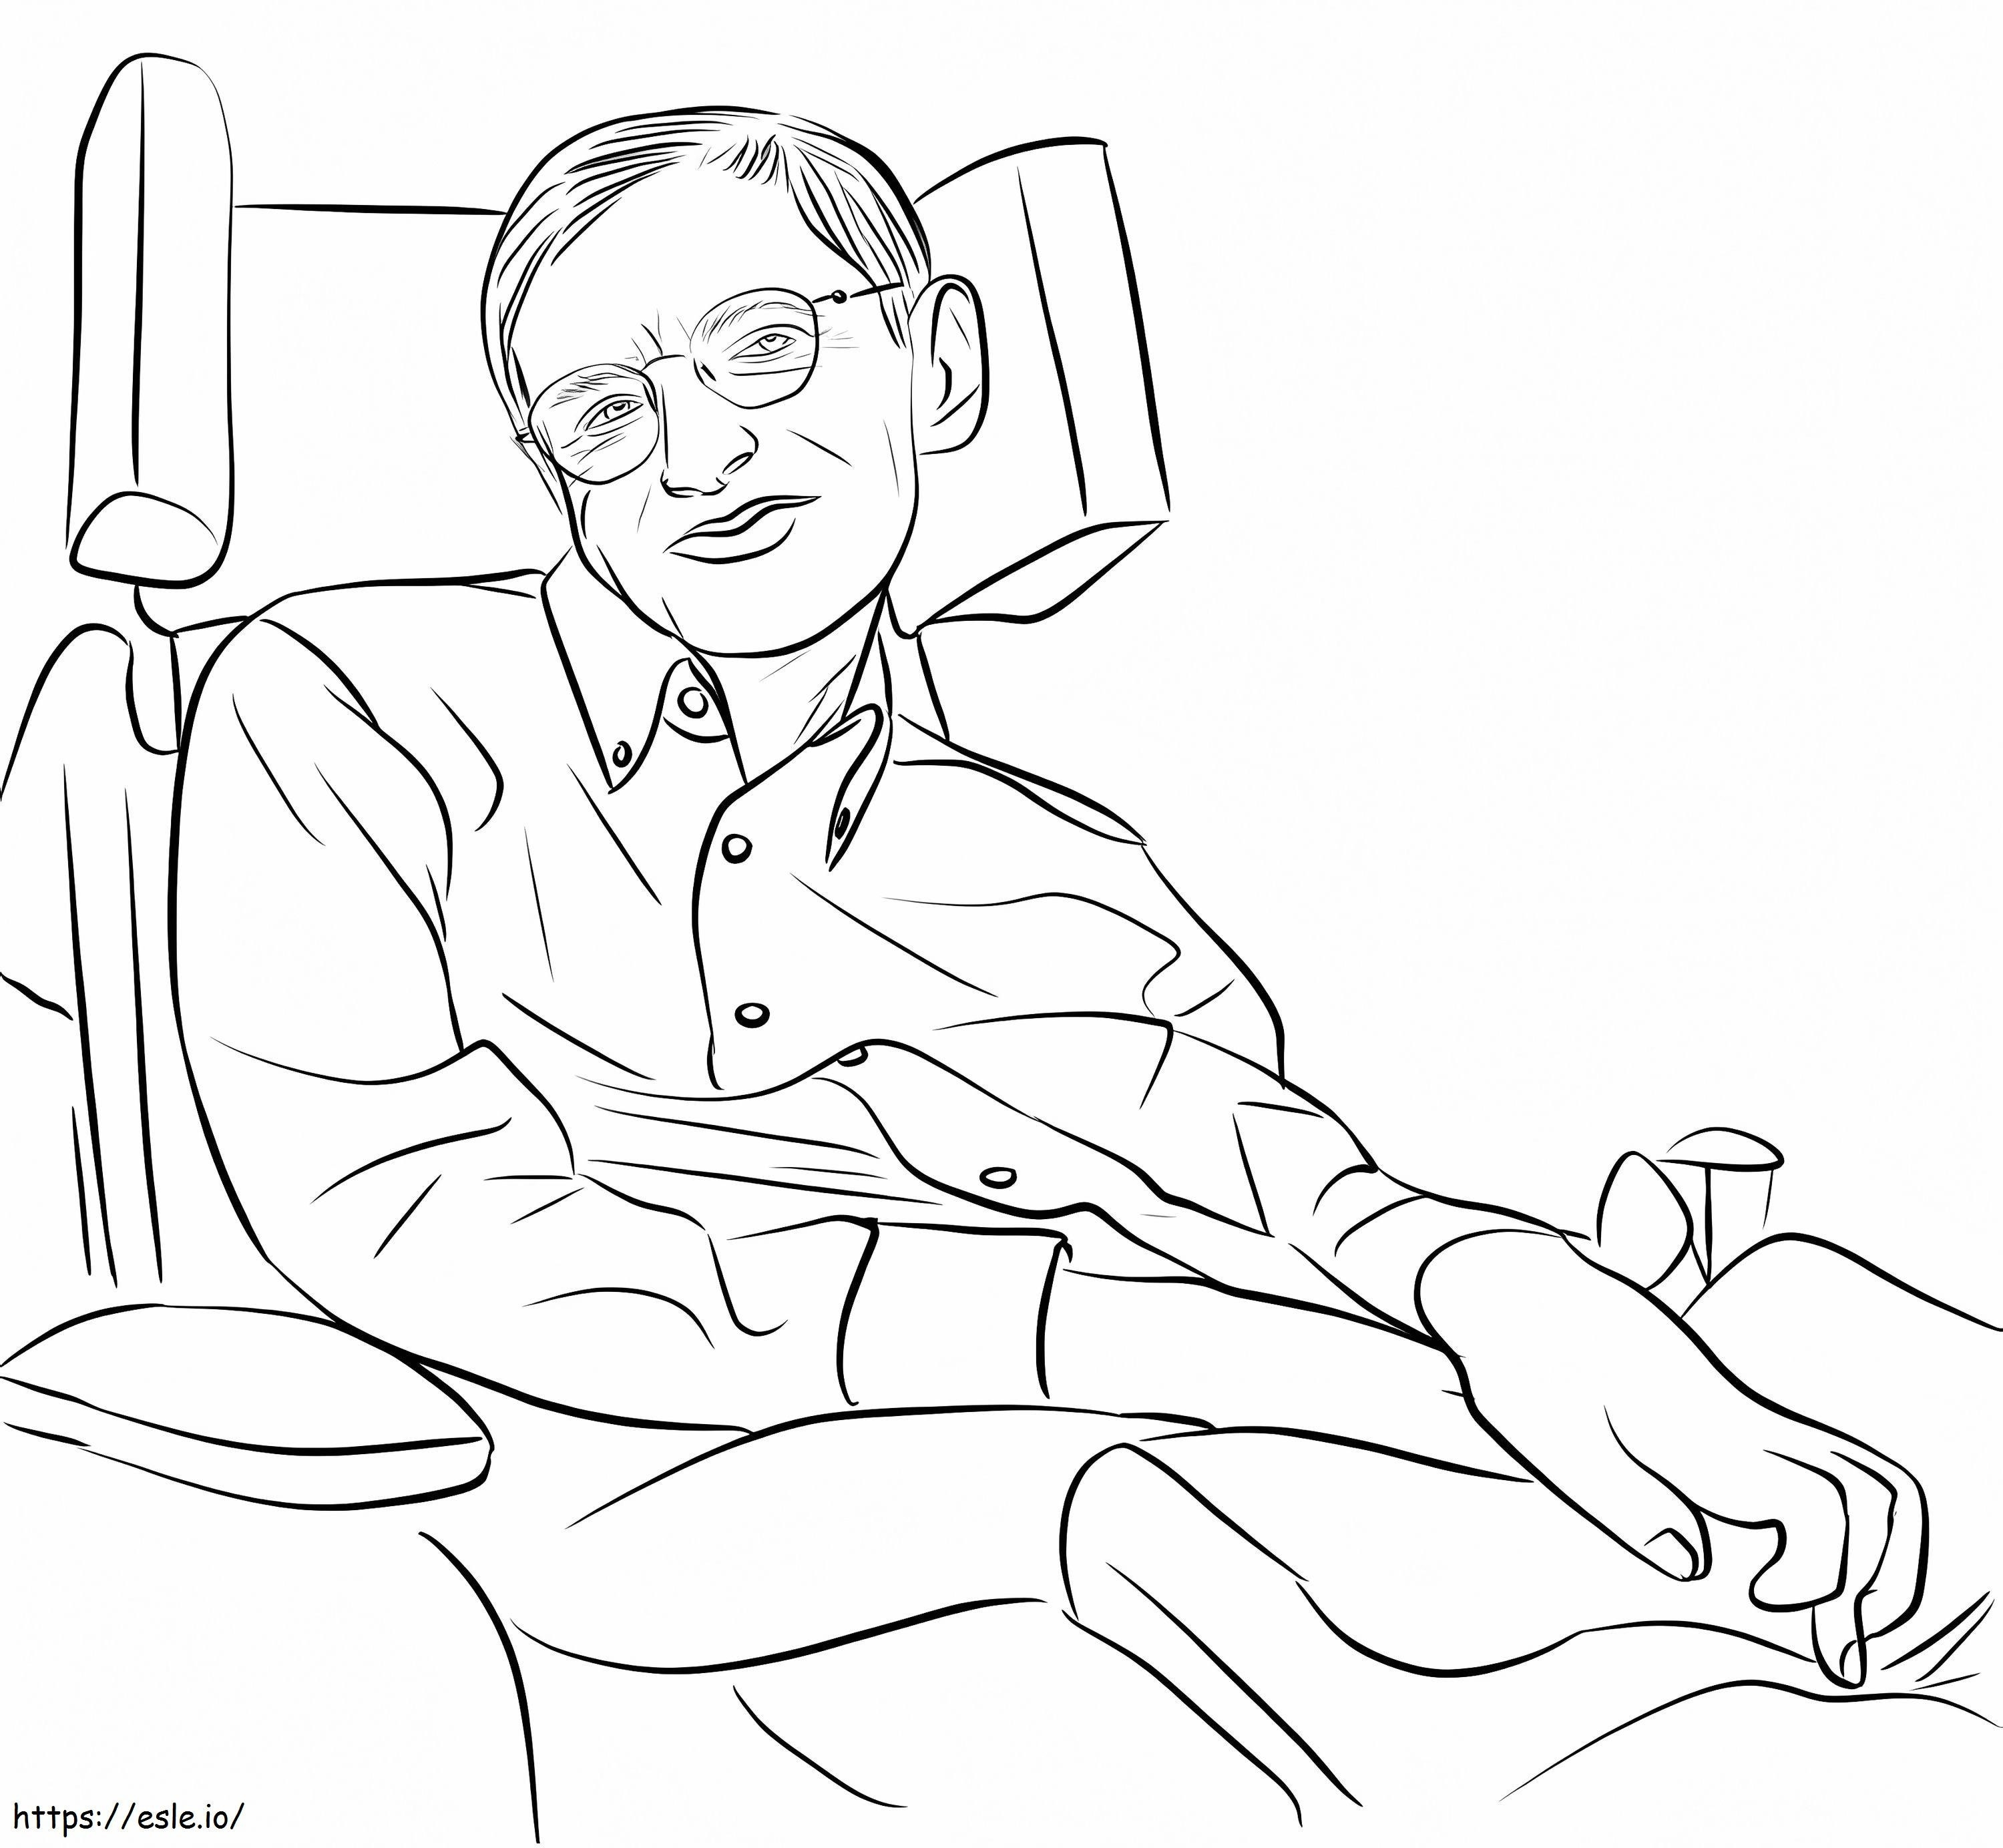 Stephen Hawking ausmalbilder